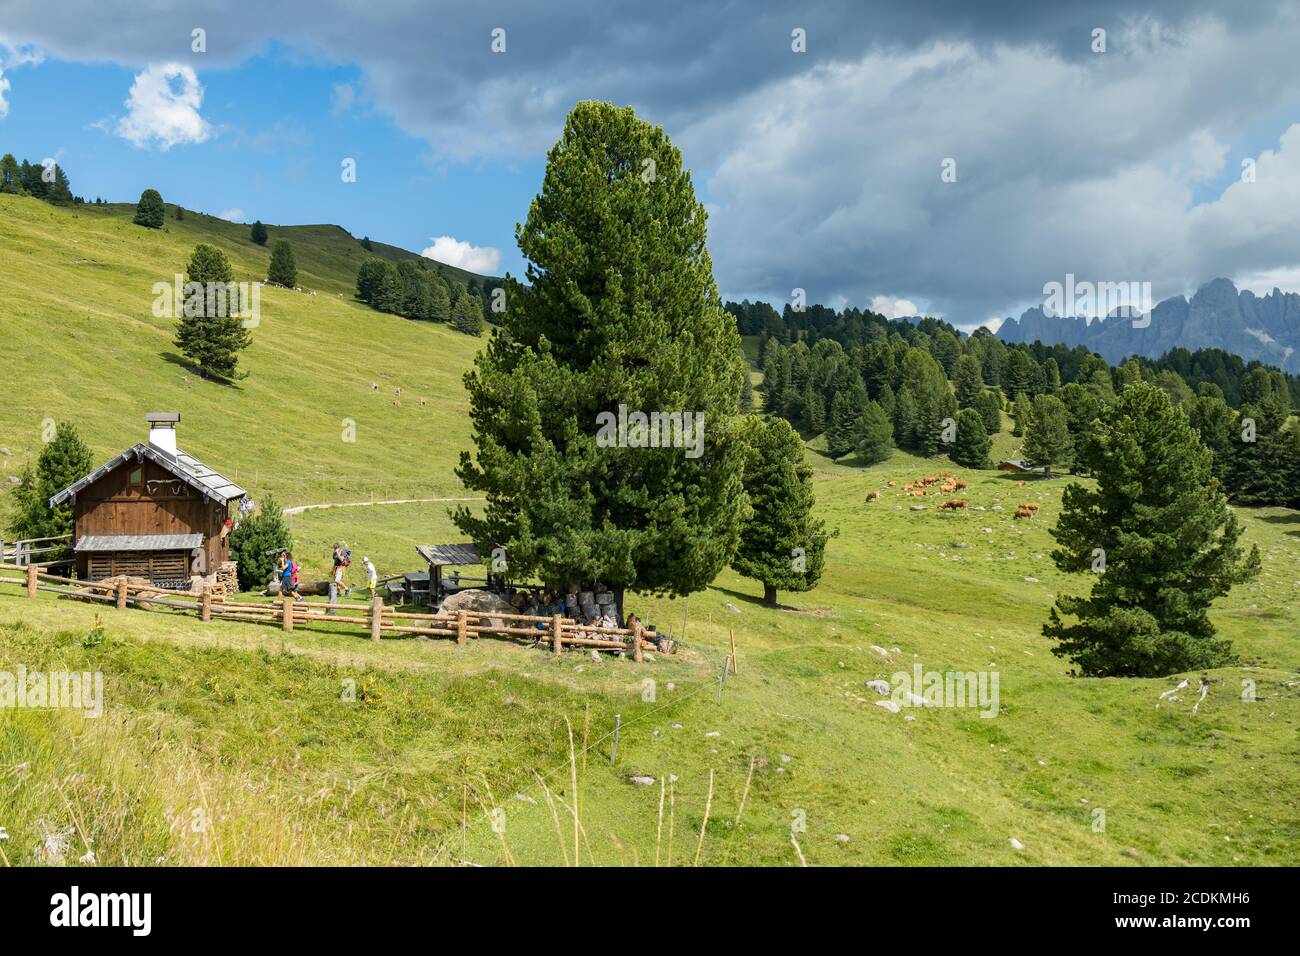 TONADICO, TRENTINO/ITALIEN - AUGUST 11 : Zuflucht im Naturpark Paneveggio Pale di San Martino in Tonadico, Trentino, Italien am 11. August 2020. Nicht identifizierte Personen Stockfoto